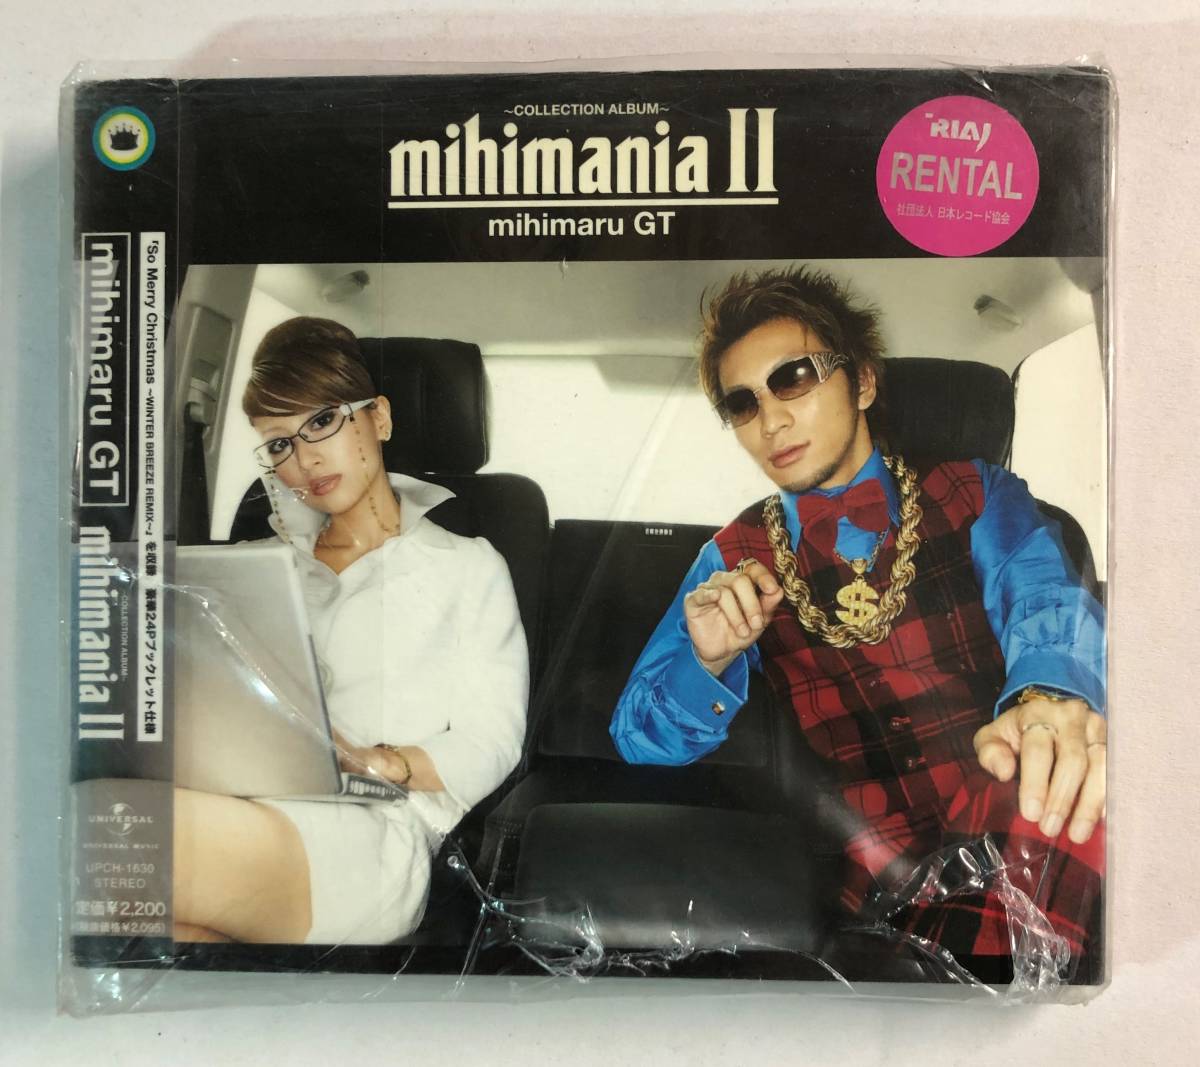 ヤフオク! - 【CD】mihimaniaII~コレクション アルバム~ mihi...